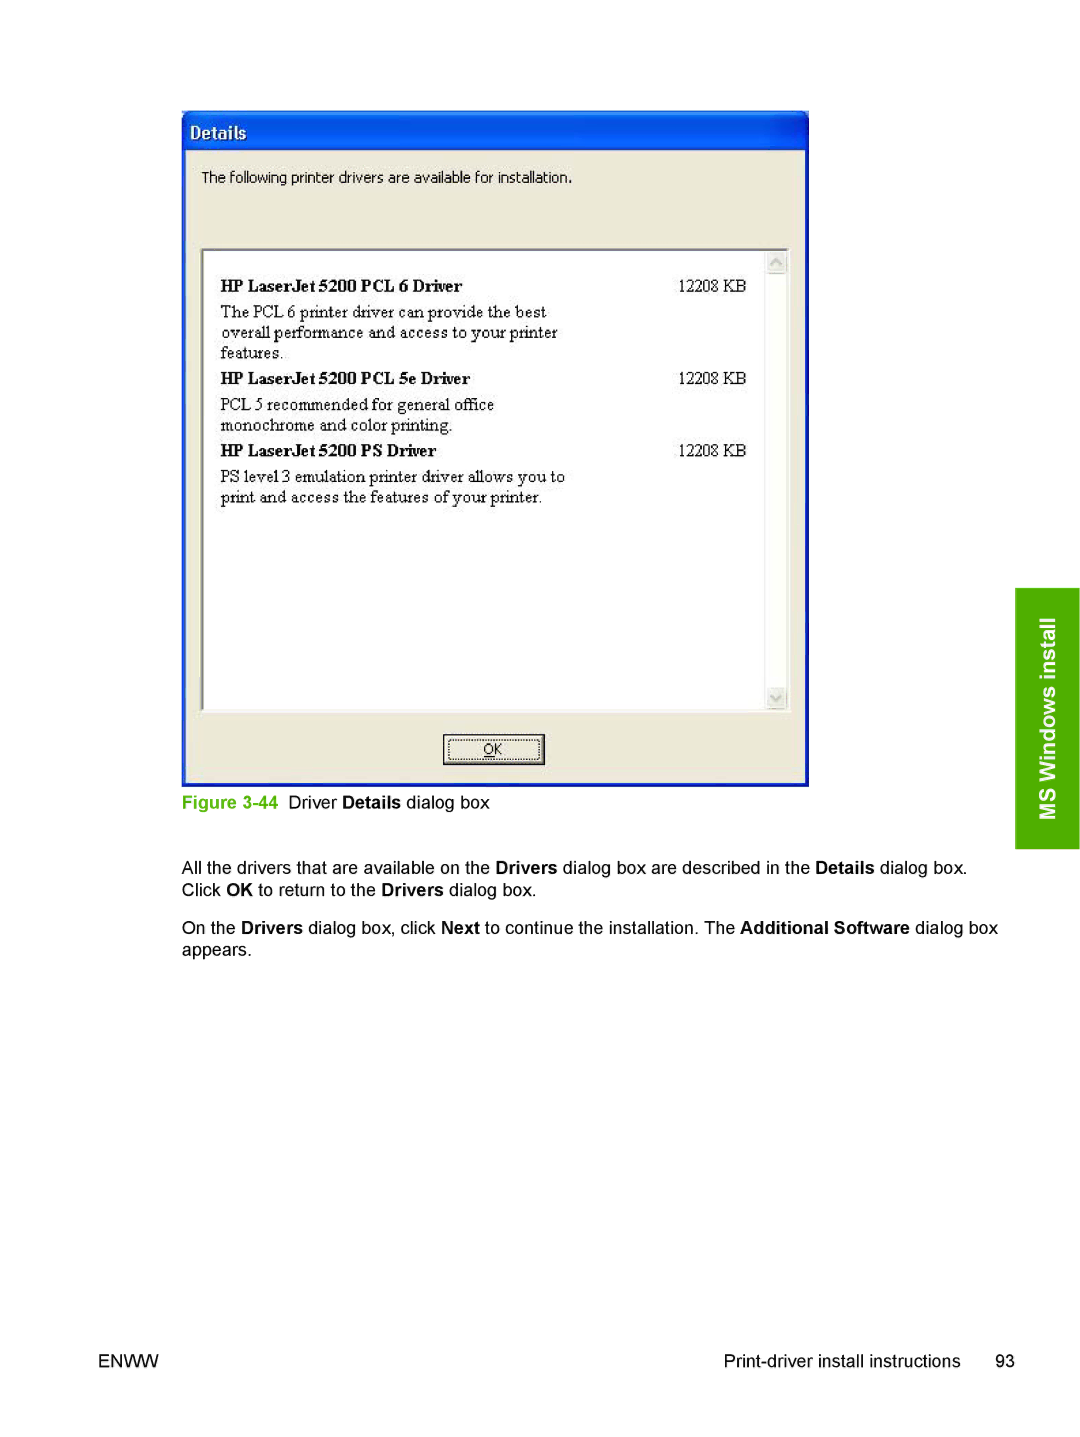 HP 5200L manual MS Windows install 